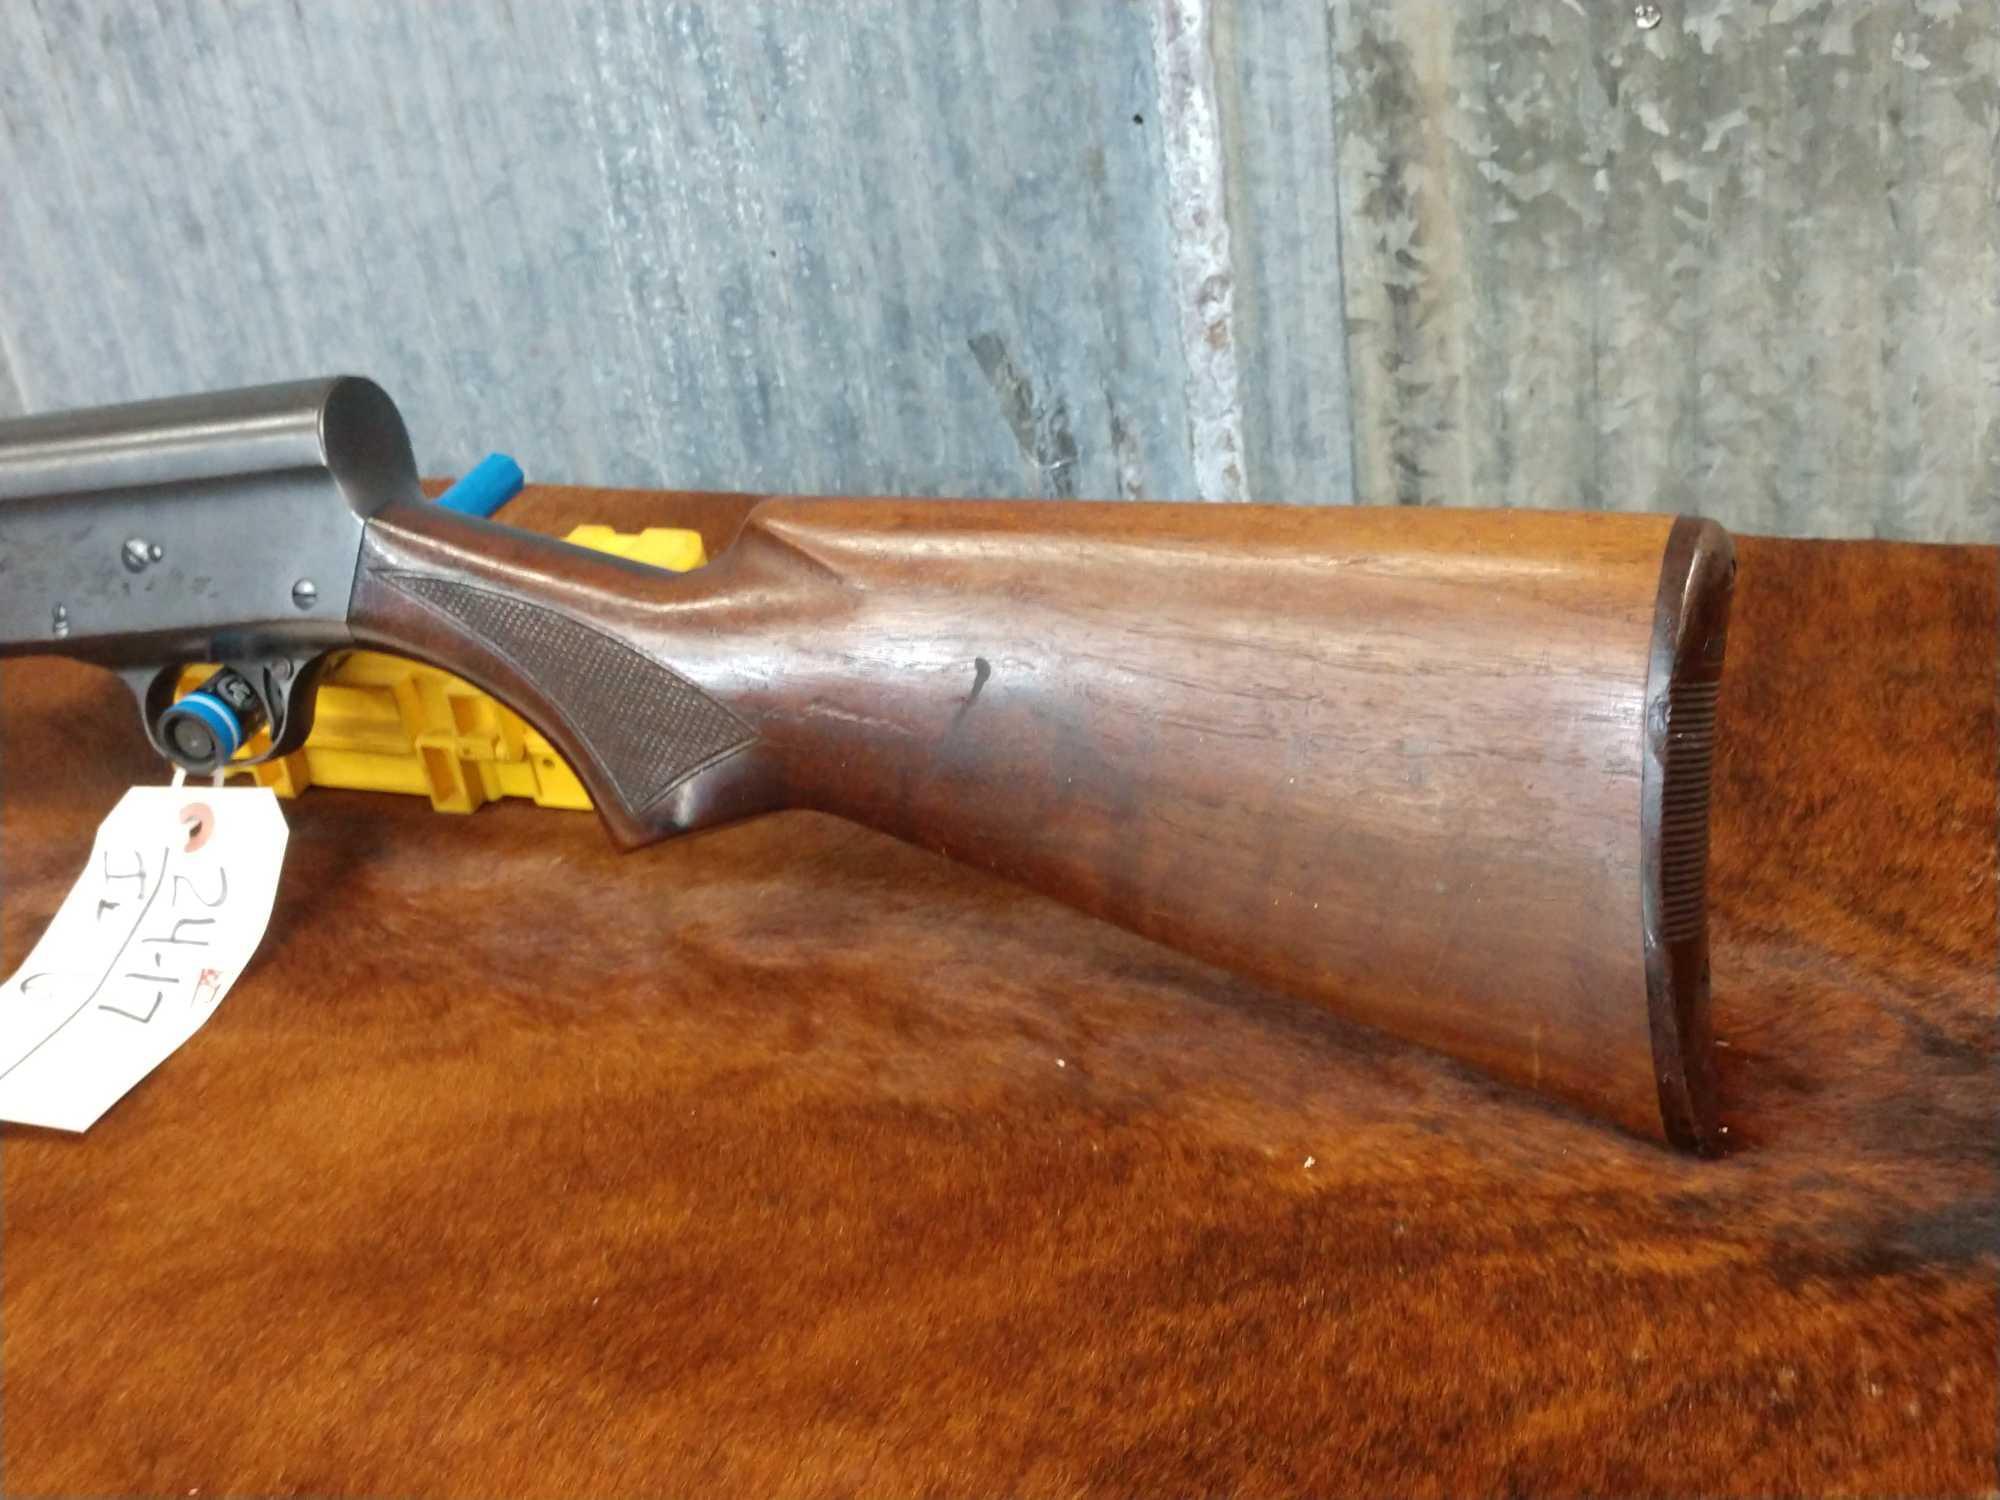 Remington Model 11 16ga Semi Auto Shotgun